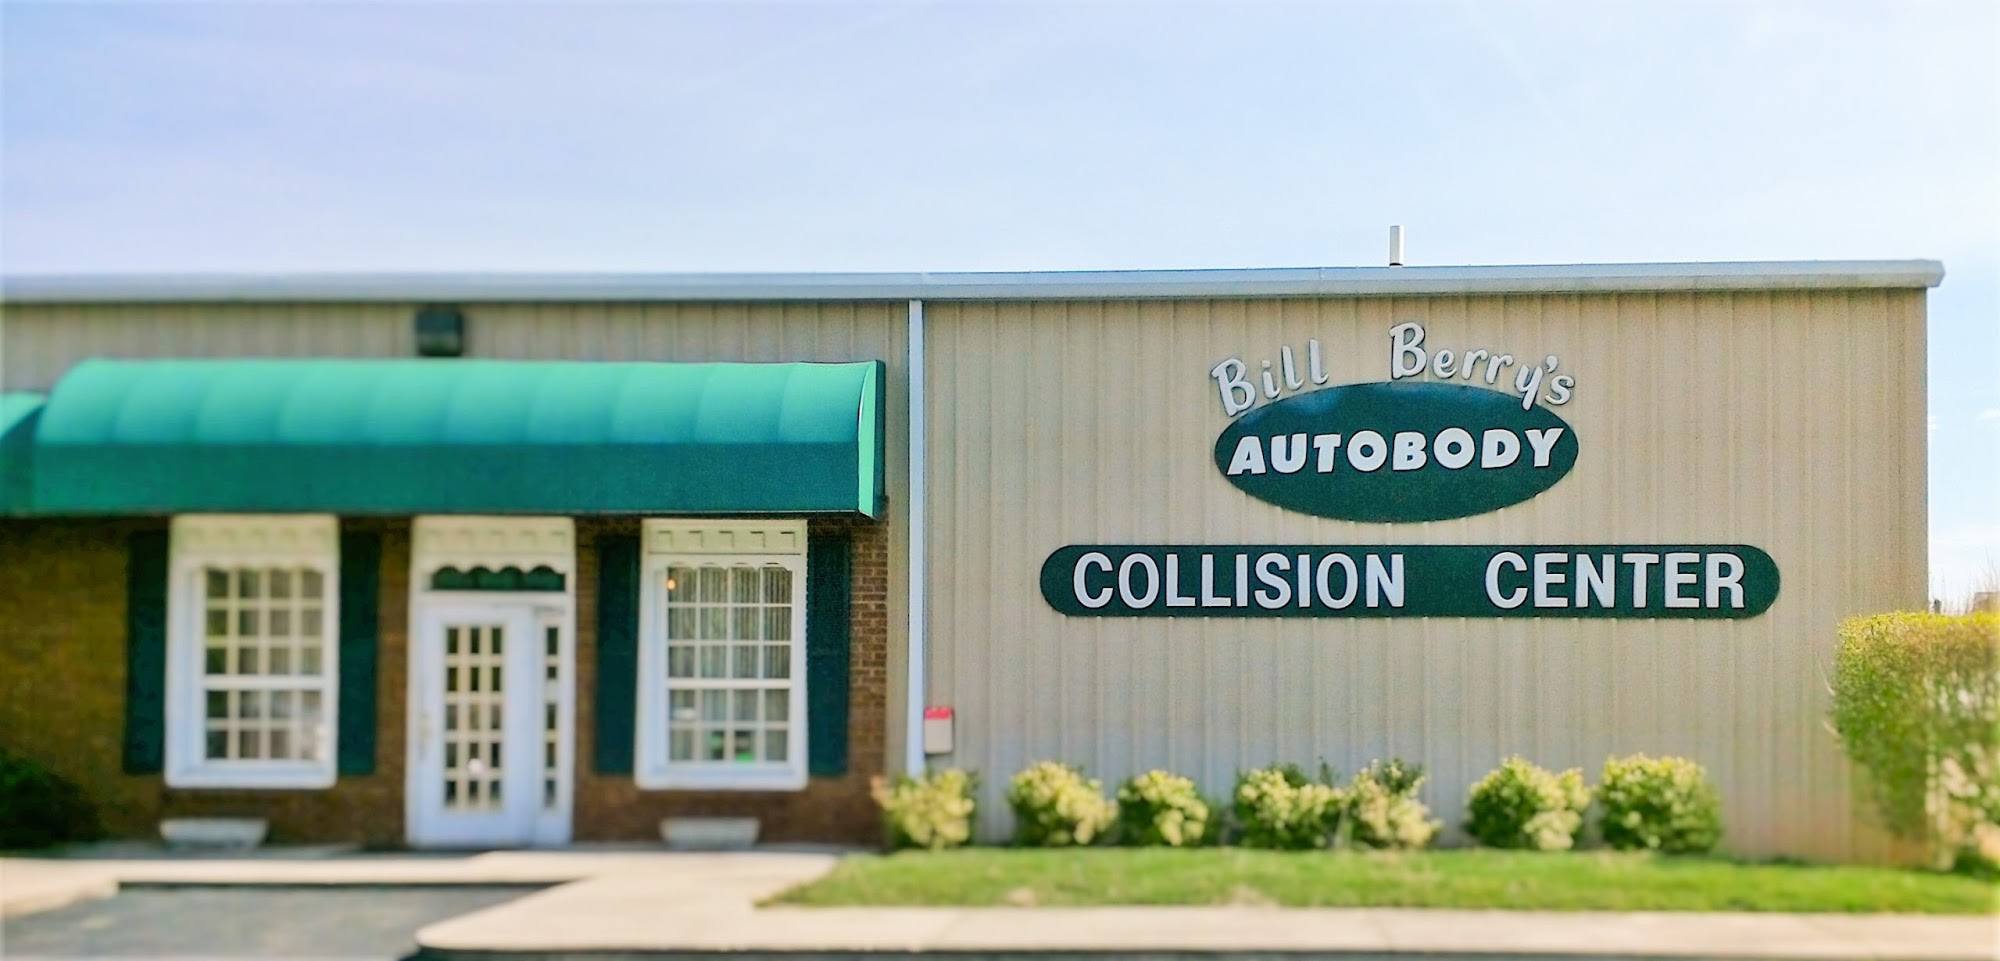 Bill Berry's Auto Body Collision Center